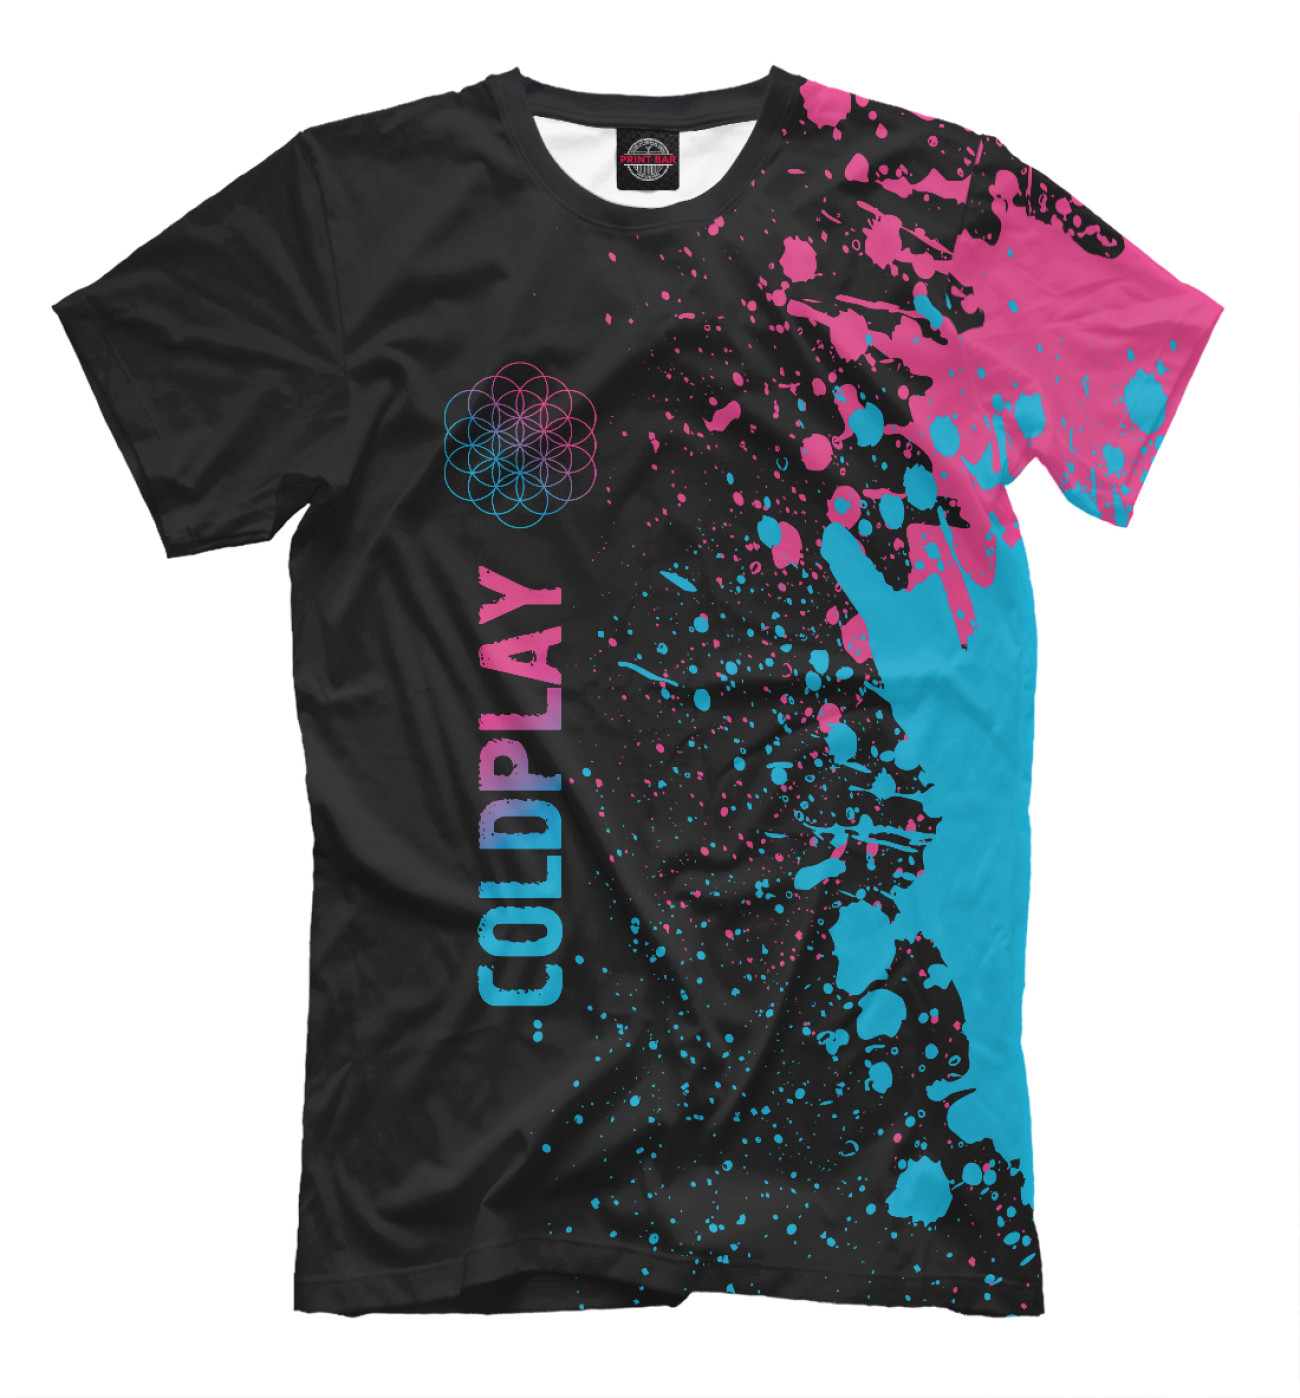 Мужская Футболка Coldplay Neon Gradient, артикул: COL-463560-fut-2